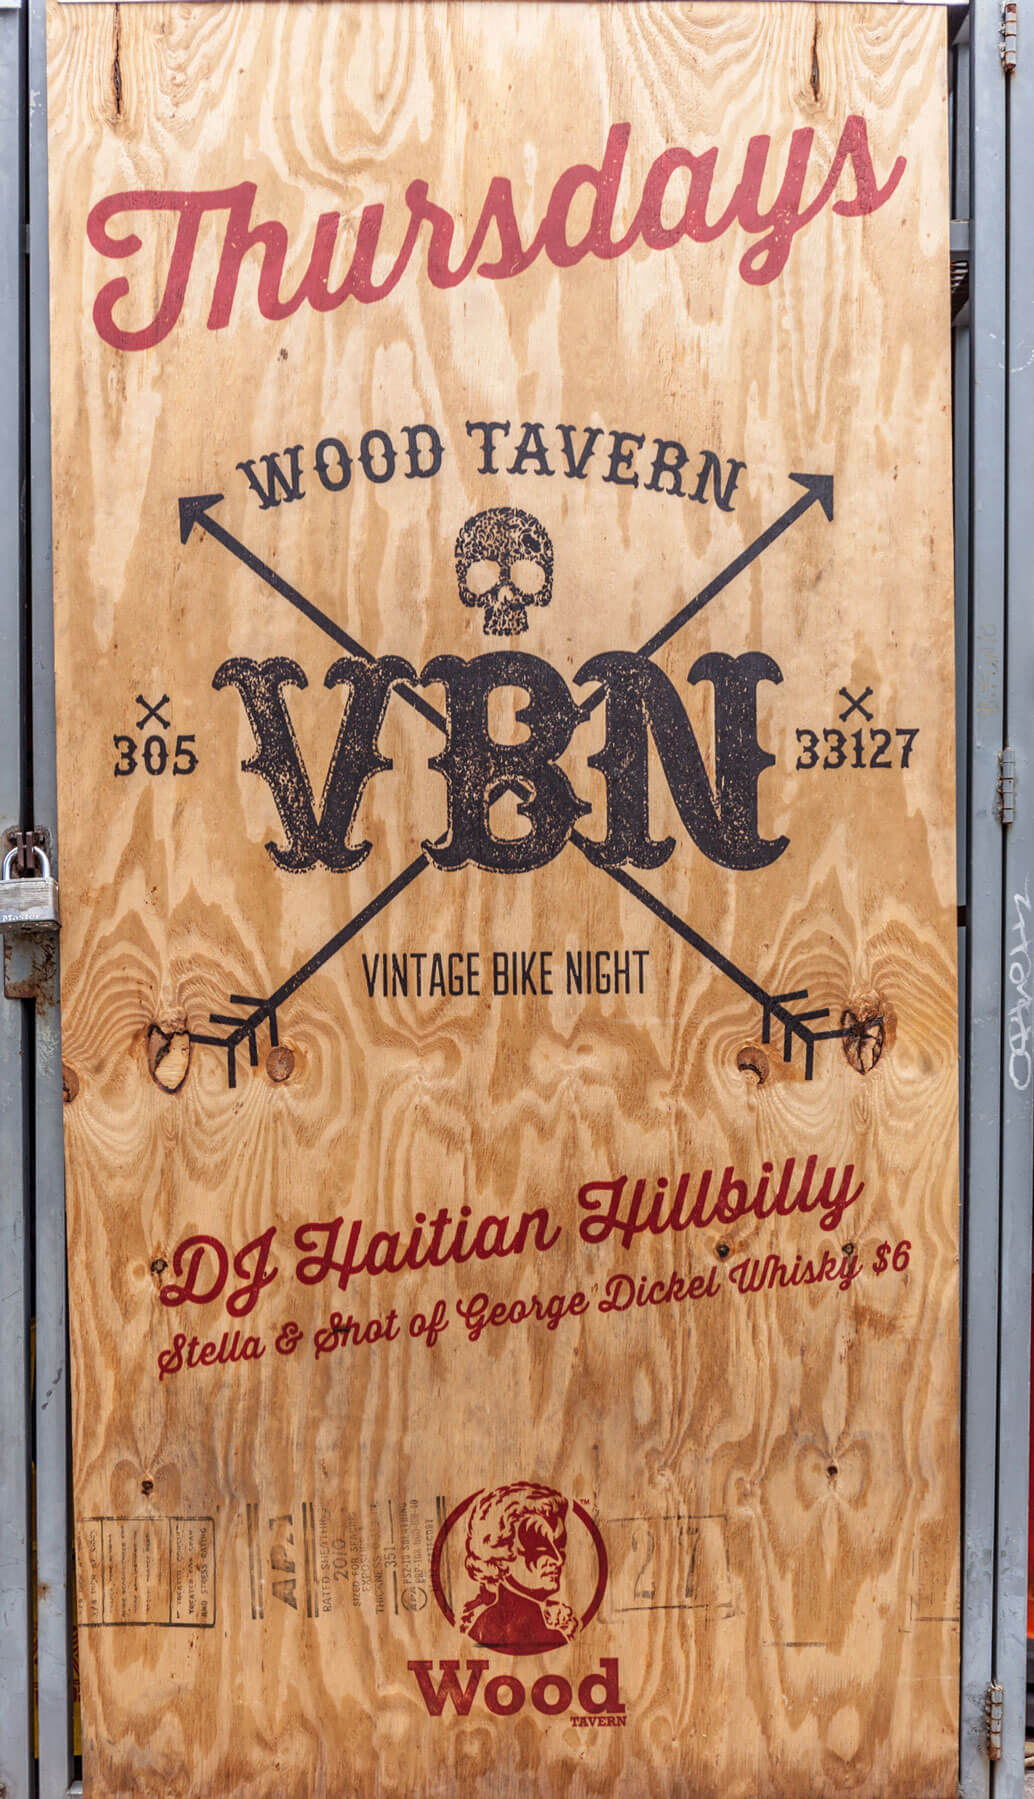 Wood Tavern Vintage Bike Night signage